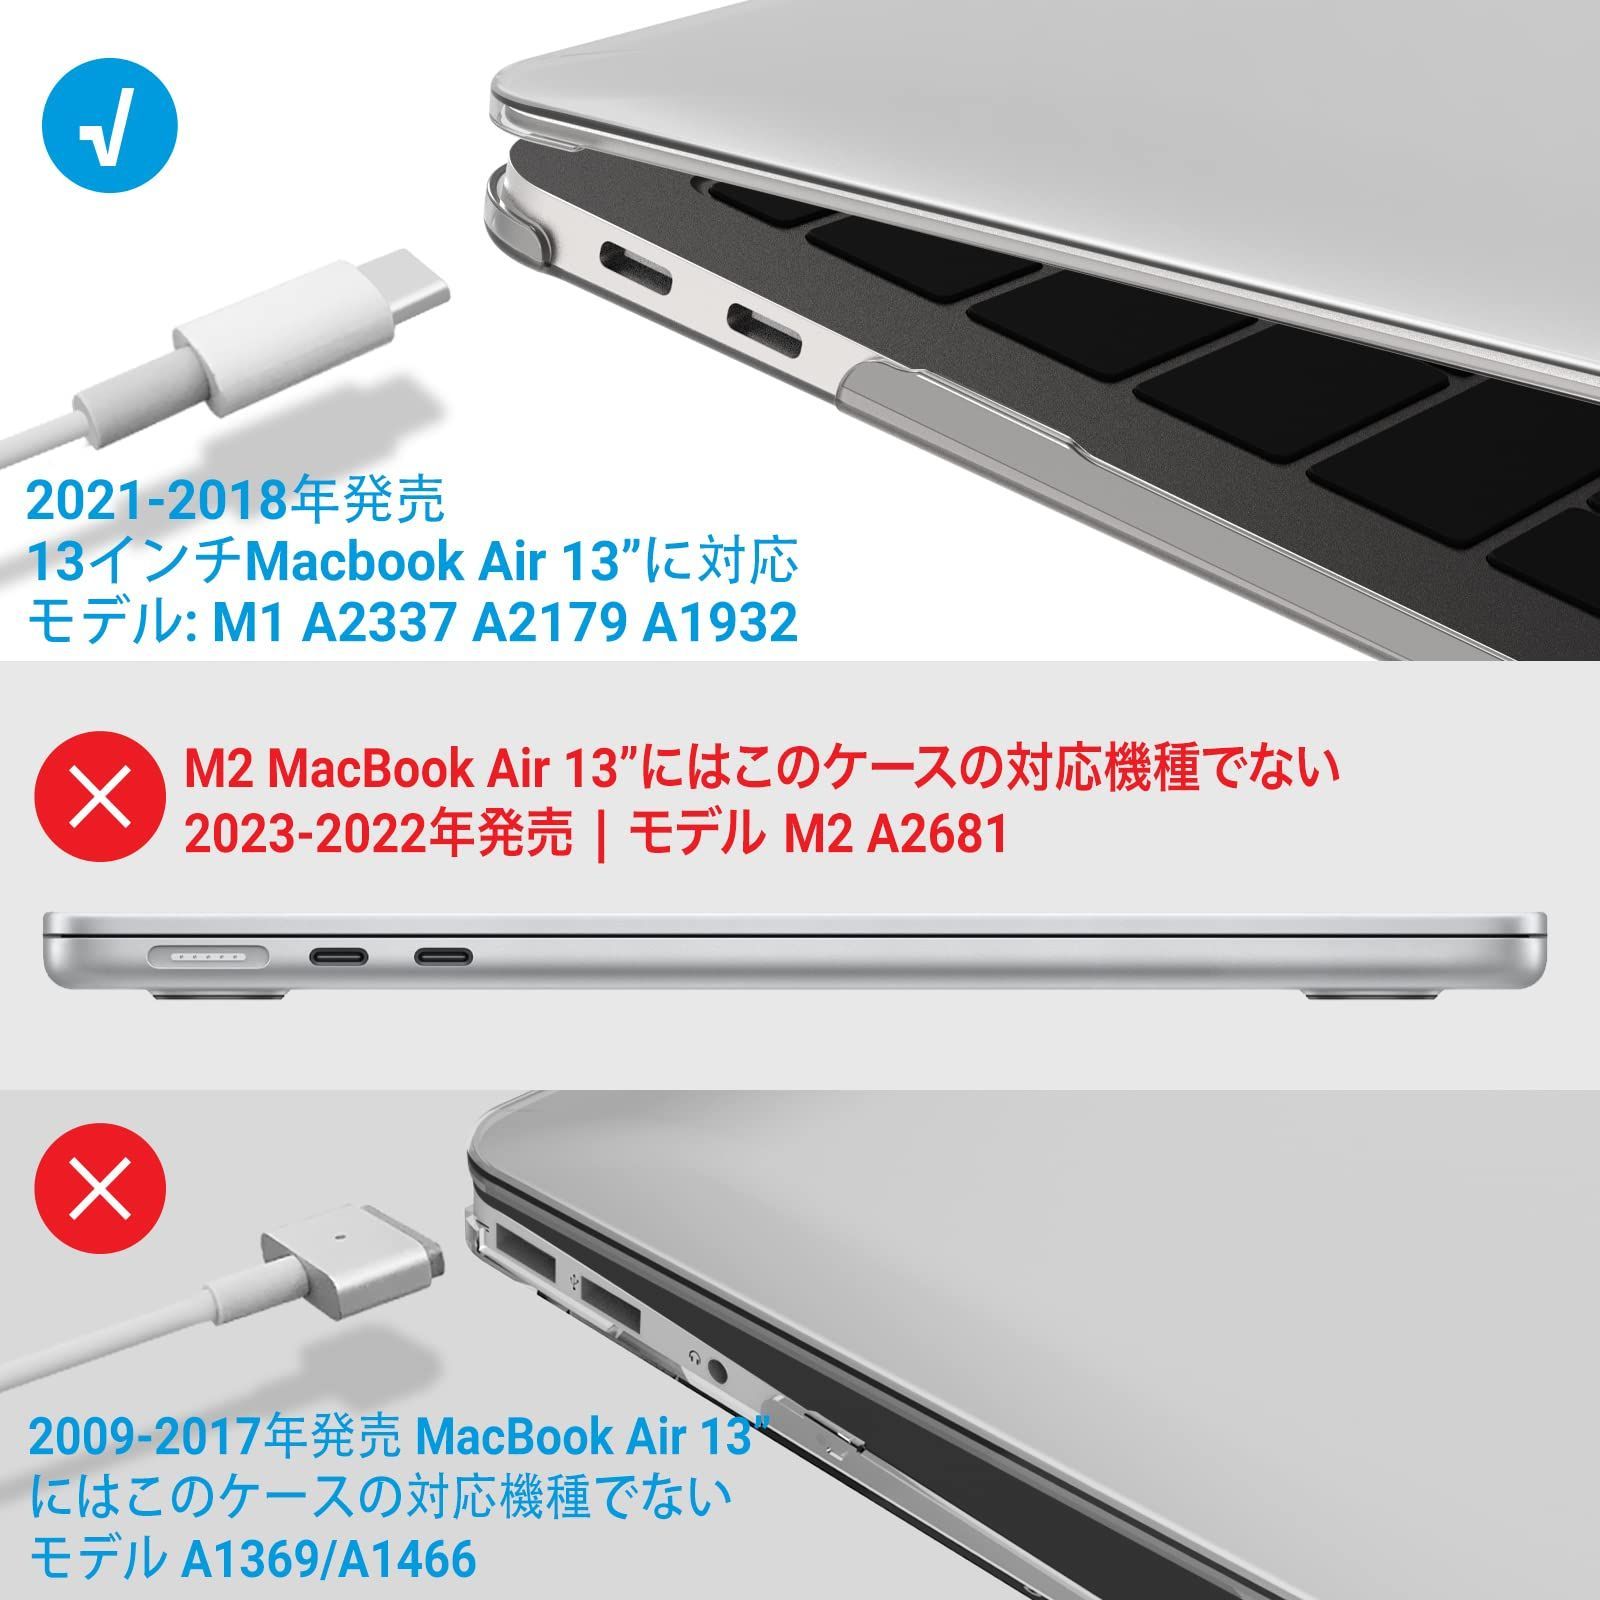 数量限定】【大人気】A1932 保護ケース A2179 + A2337 日本語配列キーボードカバー M1 + モデル フィルム ケース 付き  13インチのマックブックエアーに対応 用 Mac 13 Airに対応 Air ハードシェル MacBook カバー - メルカリ